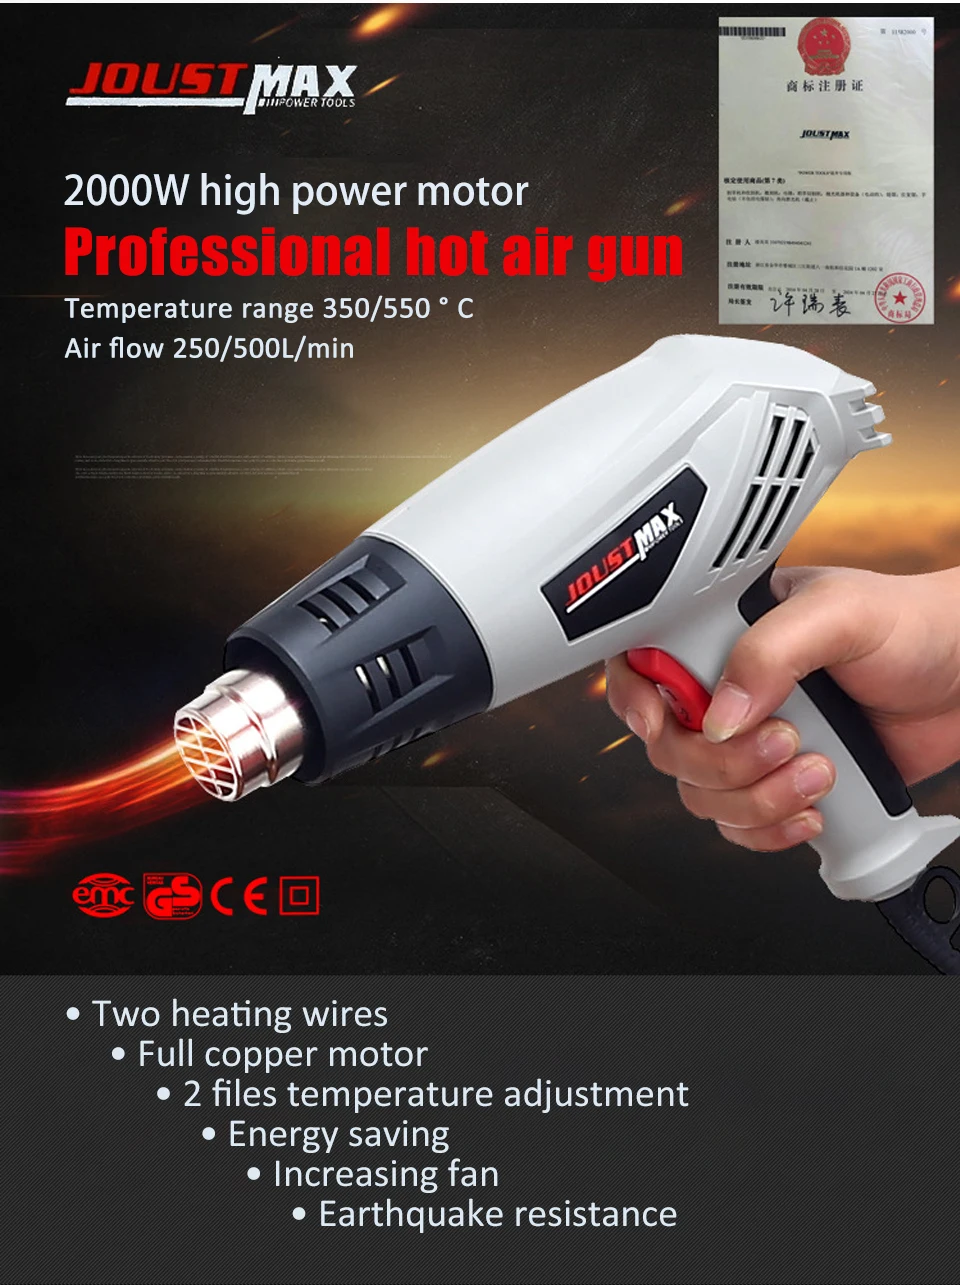 2000 Вт ЕС электрический горячий воздушный пистолет с контролем температуры строительный паяльник фен для волос тепловые пушки с 4 насадками электроинструменты